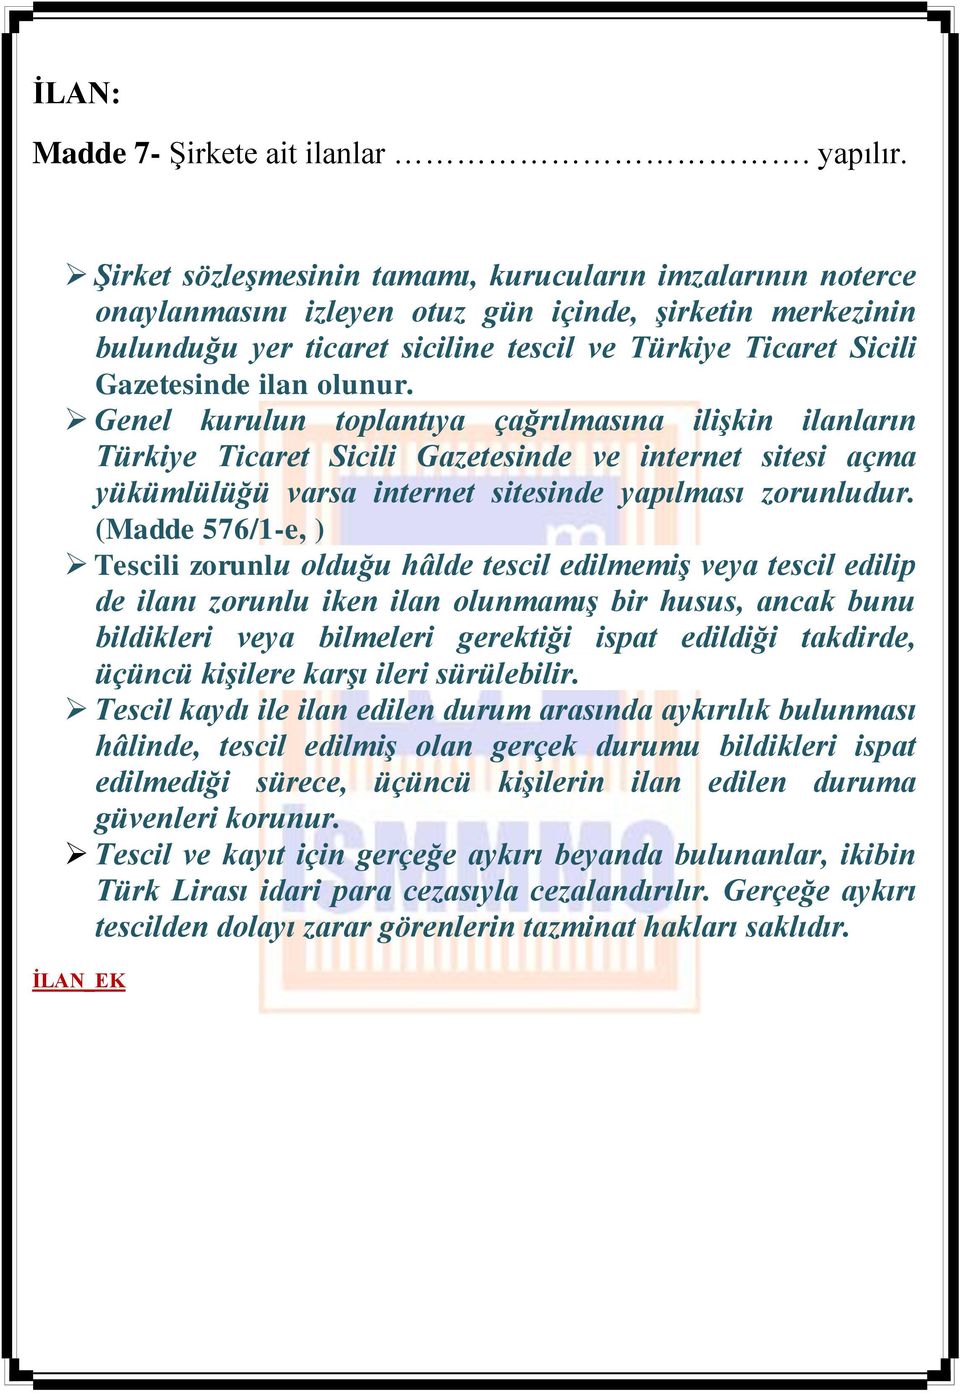 ilan olunur. Genel kurulun toplantıya çağrılmasına ilişkin ilanların Türkiye Ticaret Sicili Gazetesinde ve internet sitesi açma yükümlülüğü varsa internet sitesinde yapılması zorunludur.